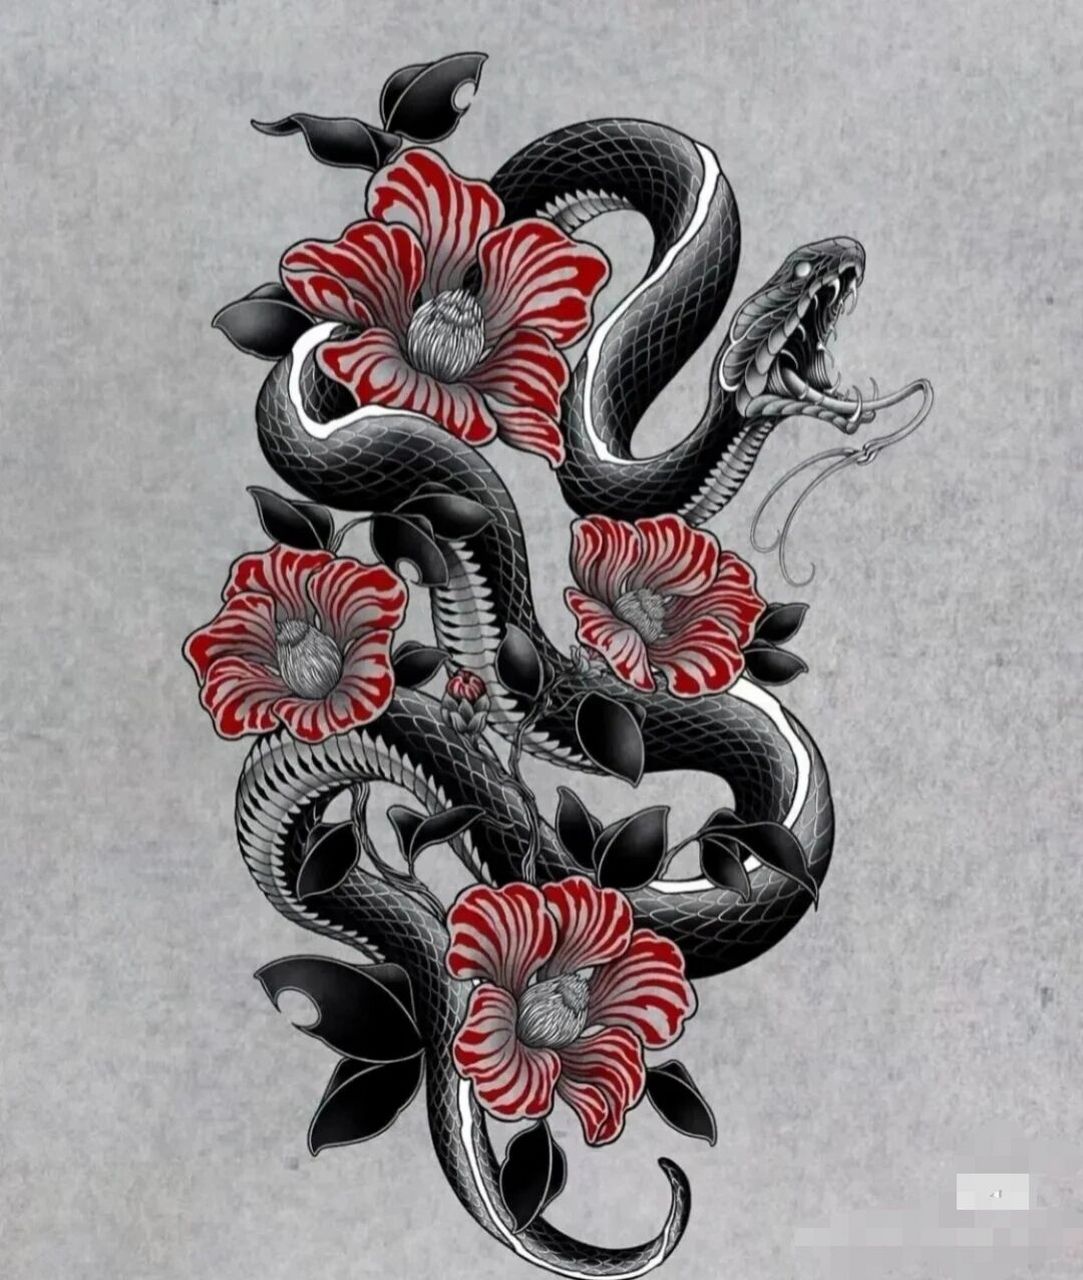 蛇纹身手稿 素材图片